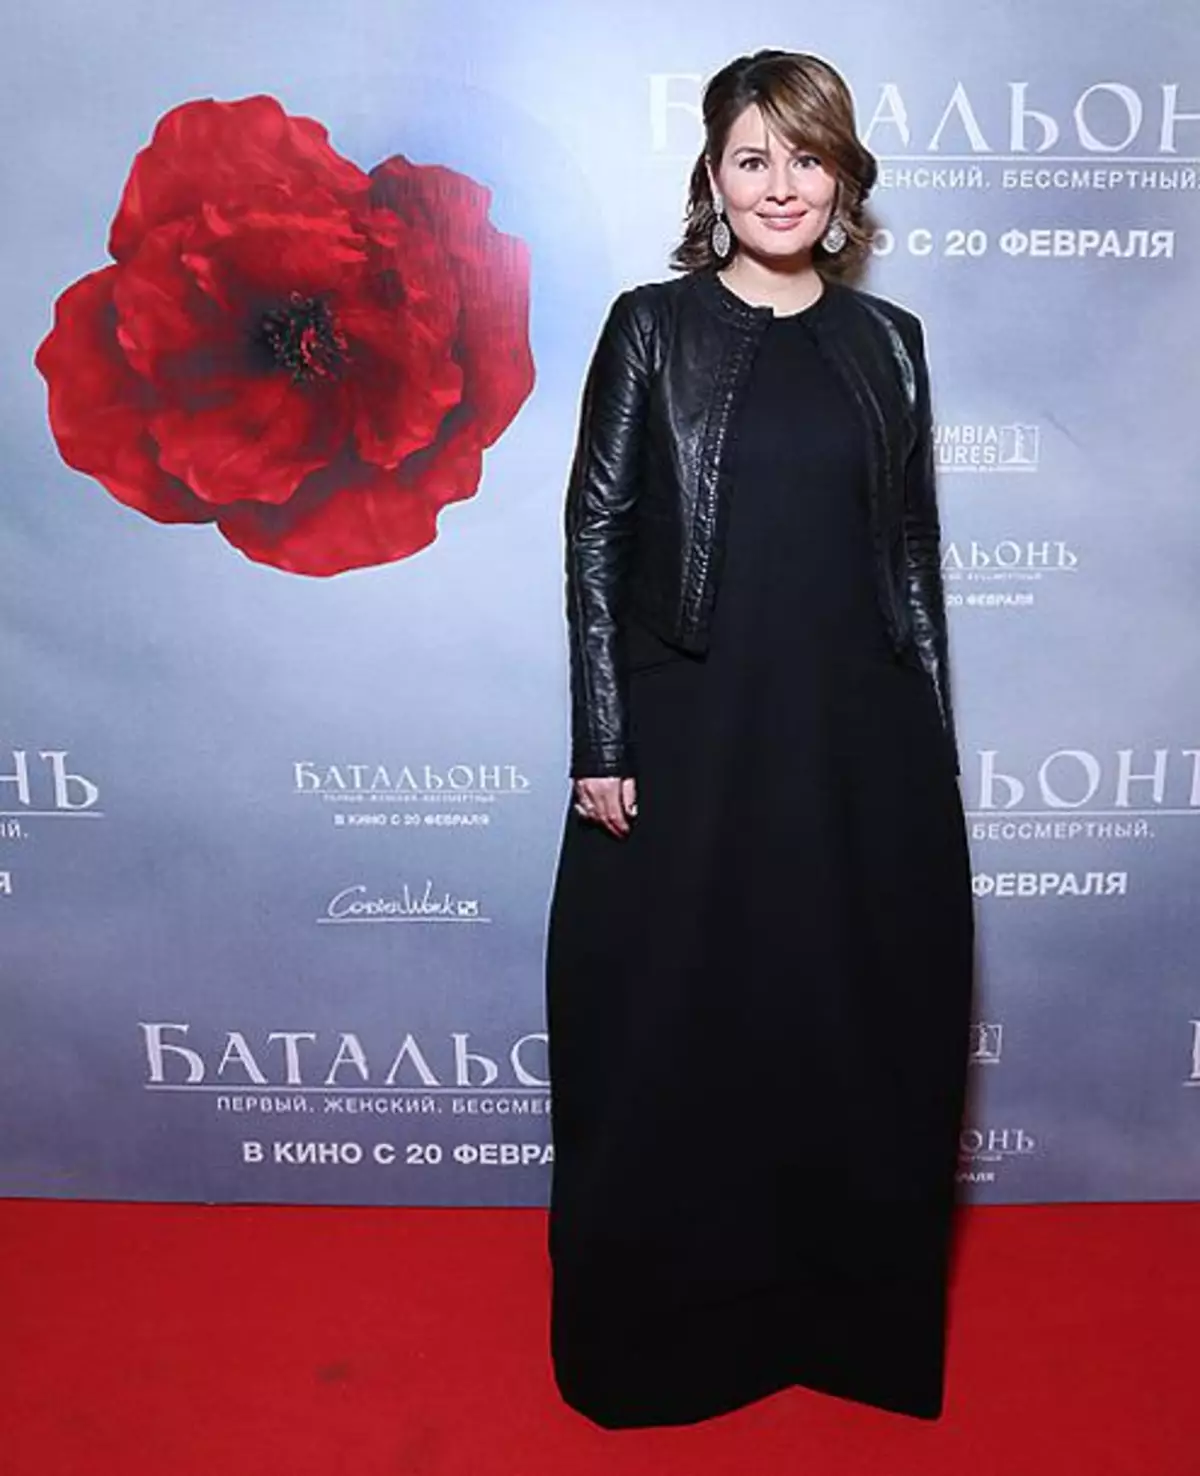 Maria Kozhevnikova in 2013